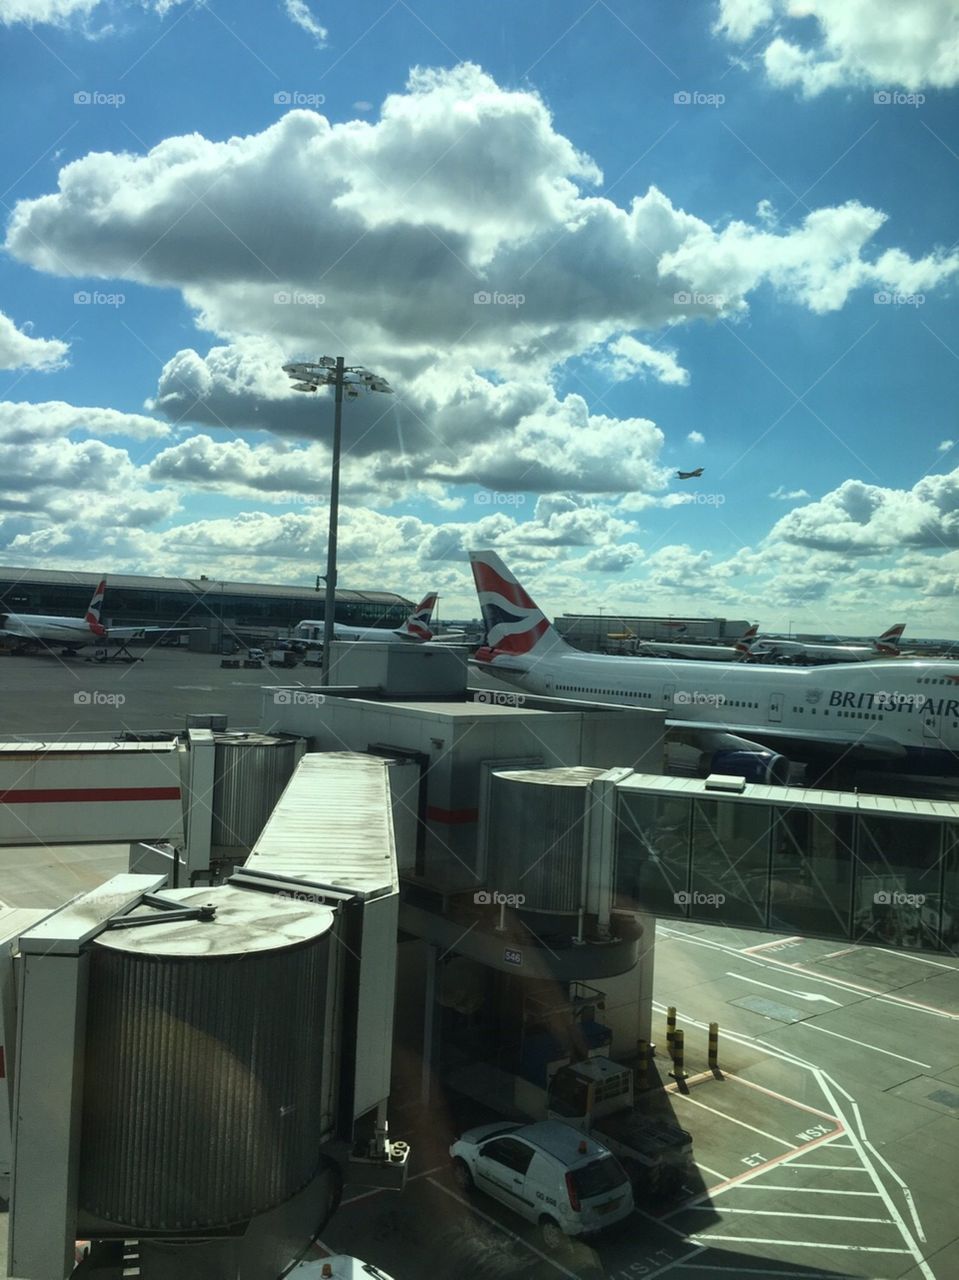 Heathrow Airport British airways